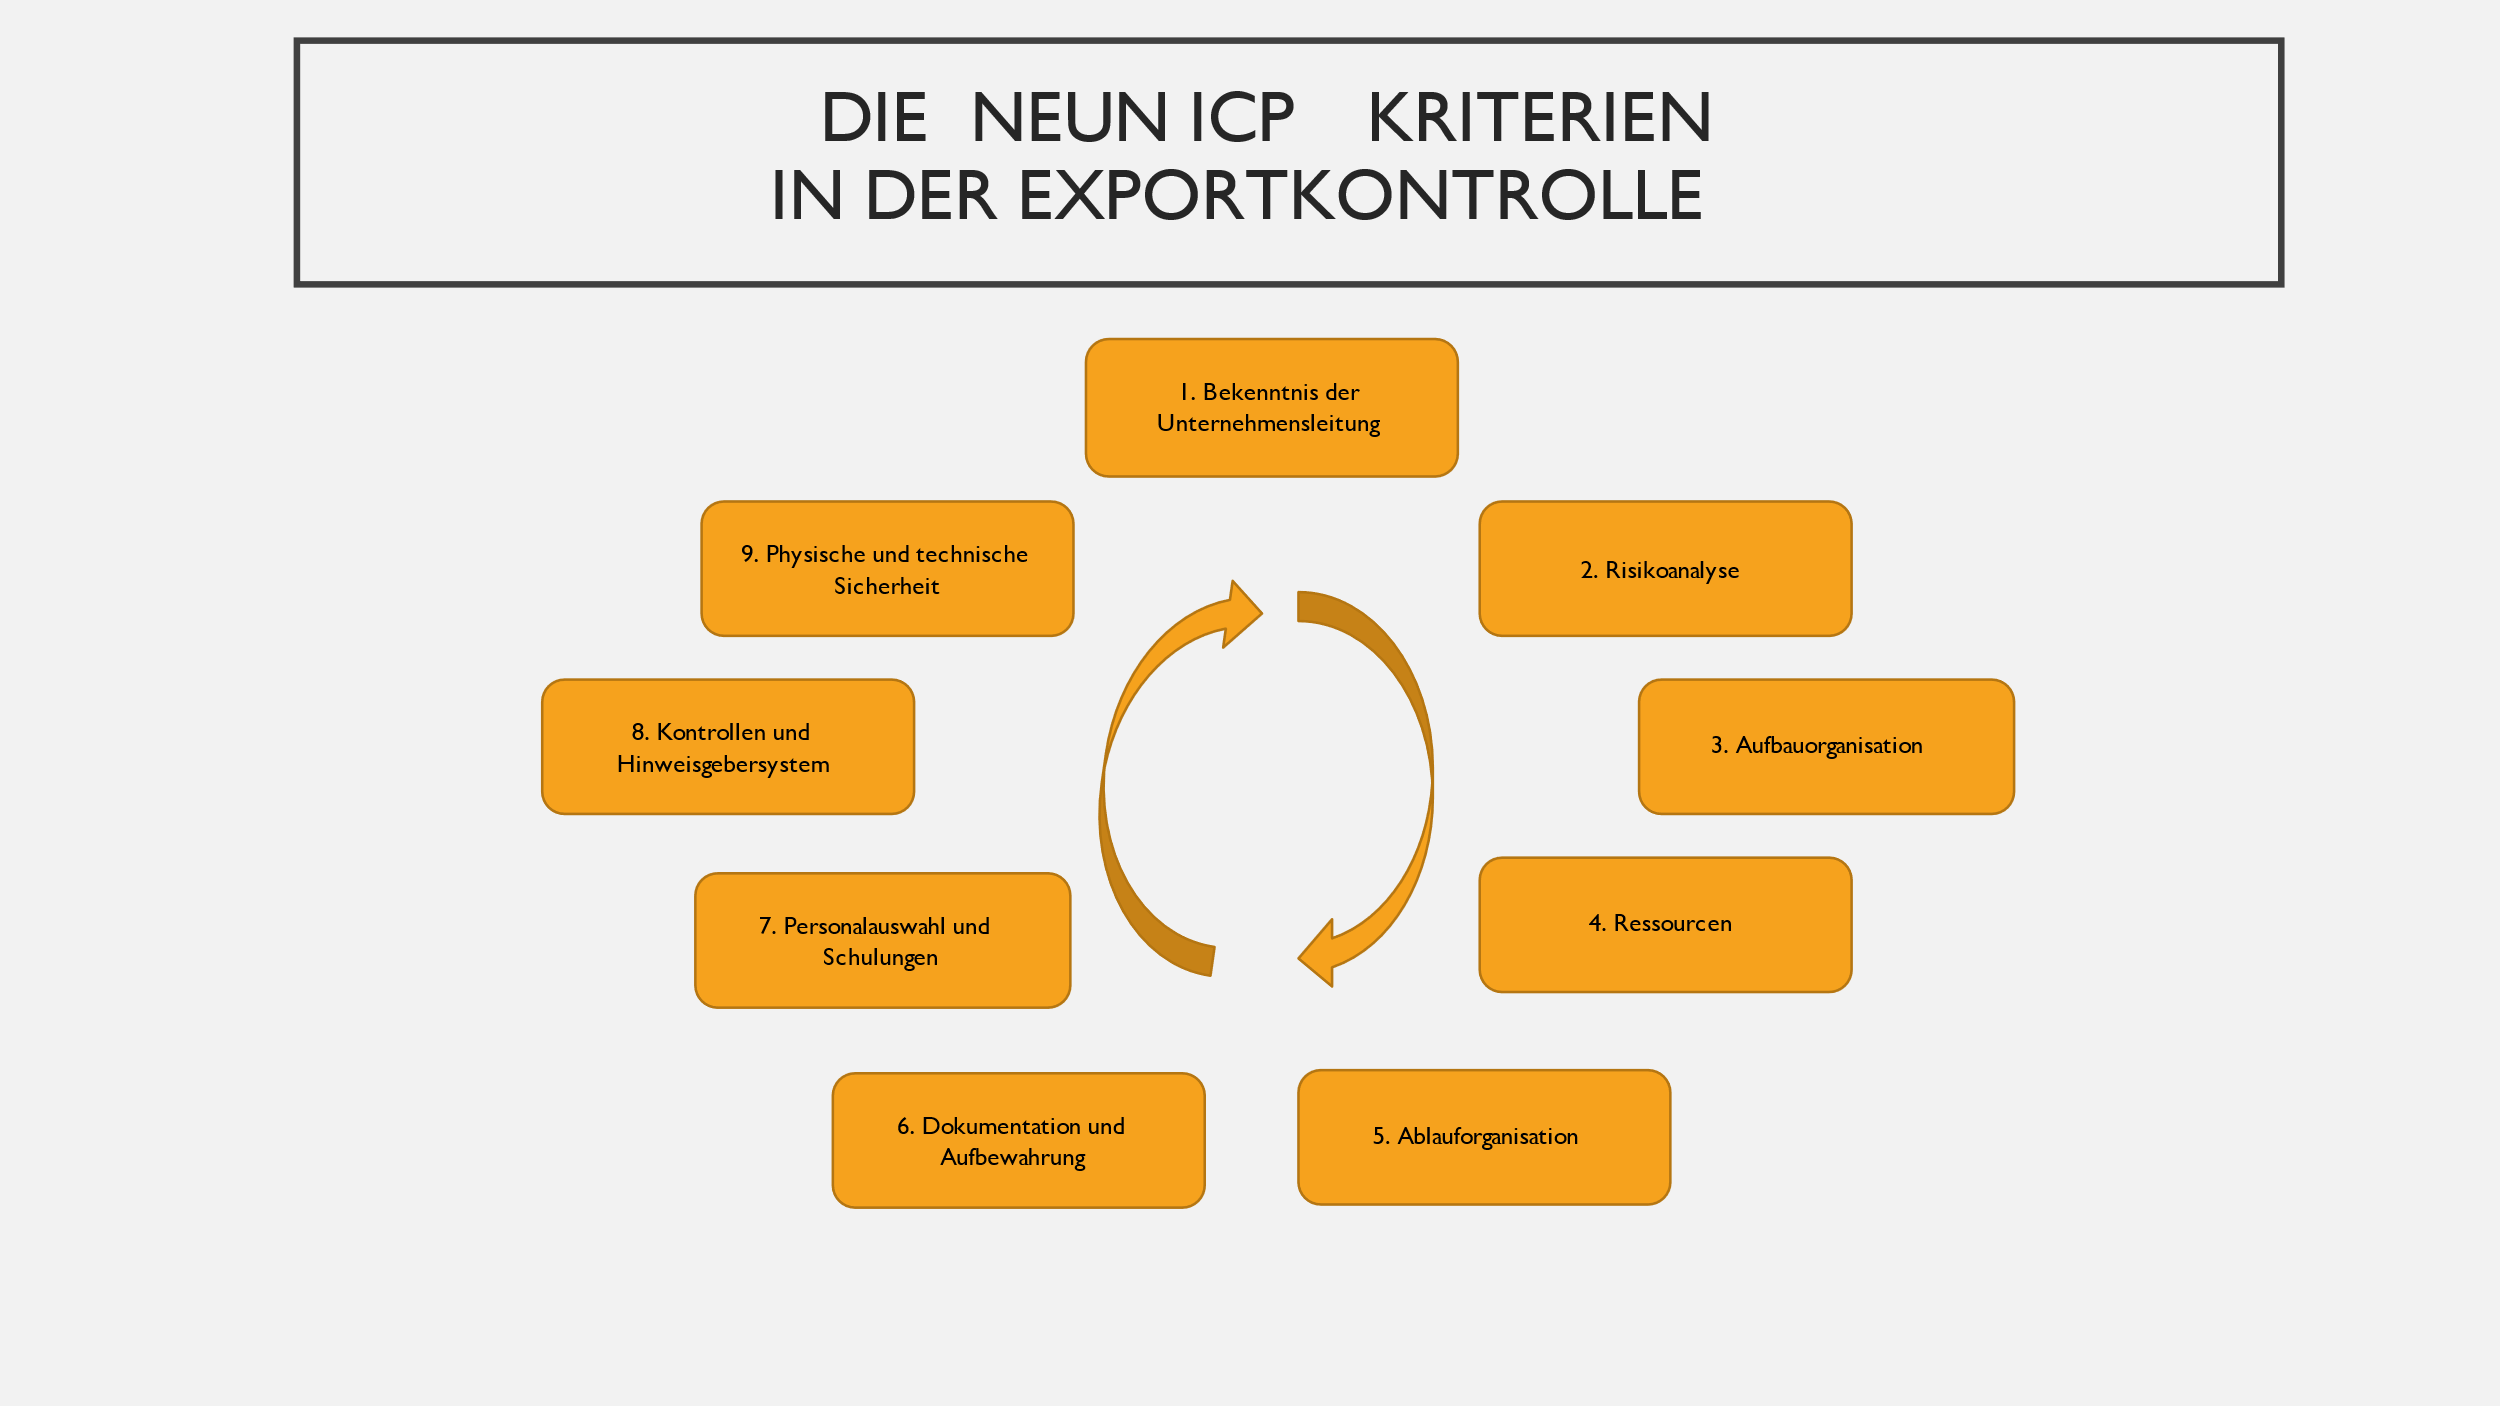 Die neun ICP Kriterien in der Exportkontrolle